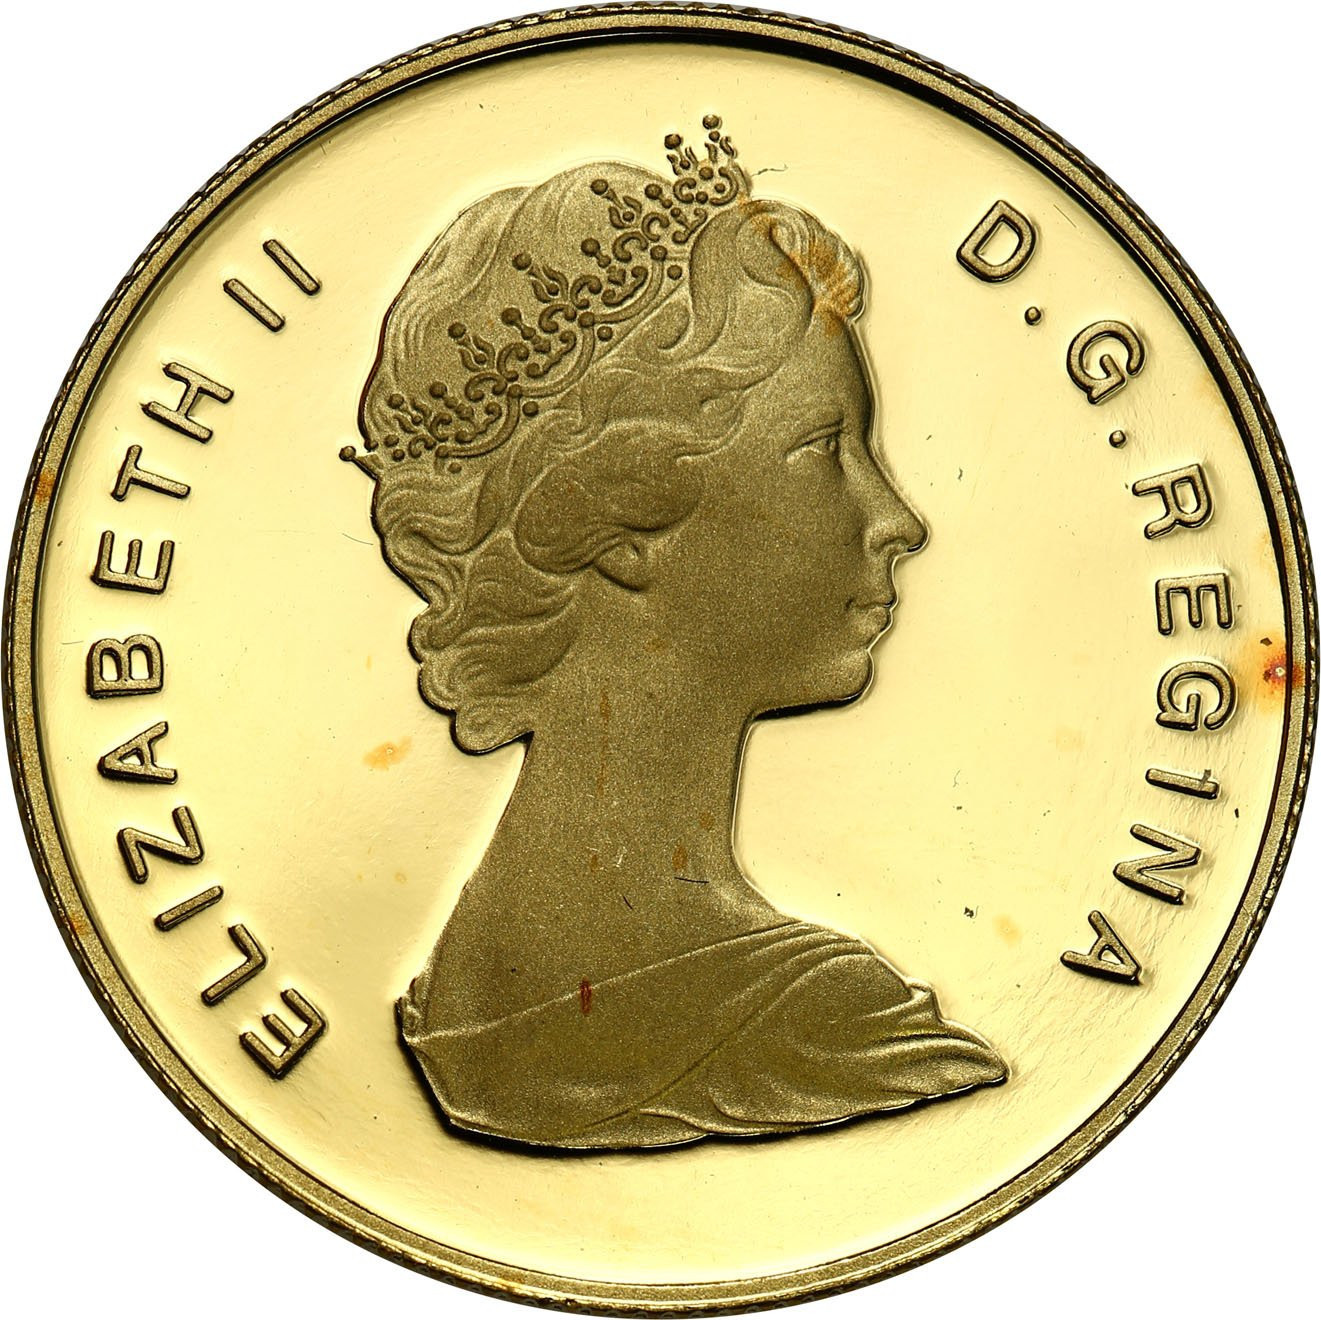 Kanada Elżbieta II 100 Dolarów 1979 st.L